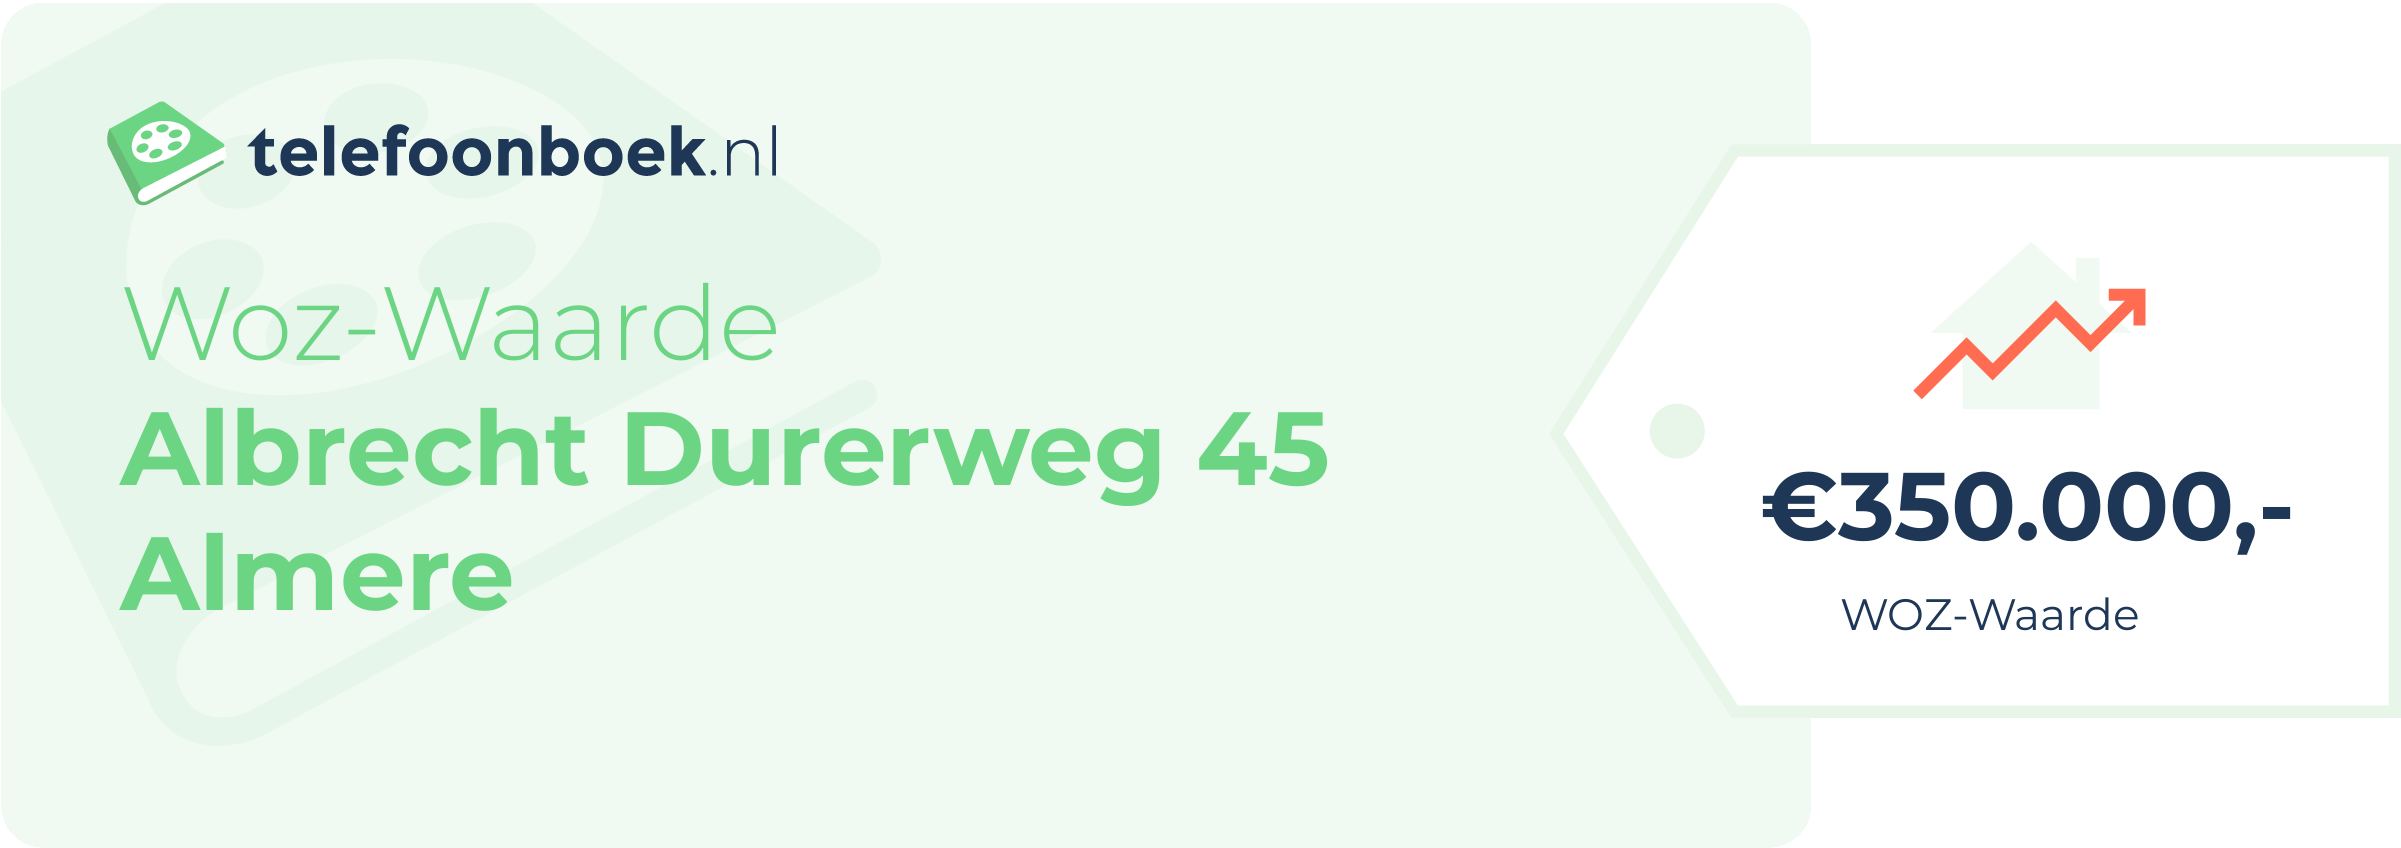 WOZ-waarde Albrecht Durerweg 45 Almere